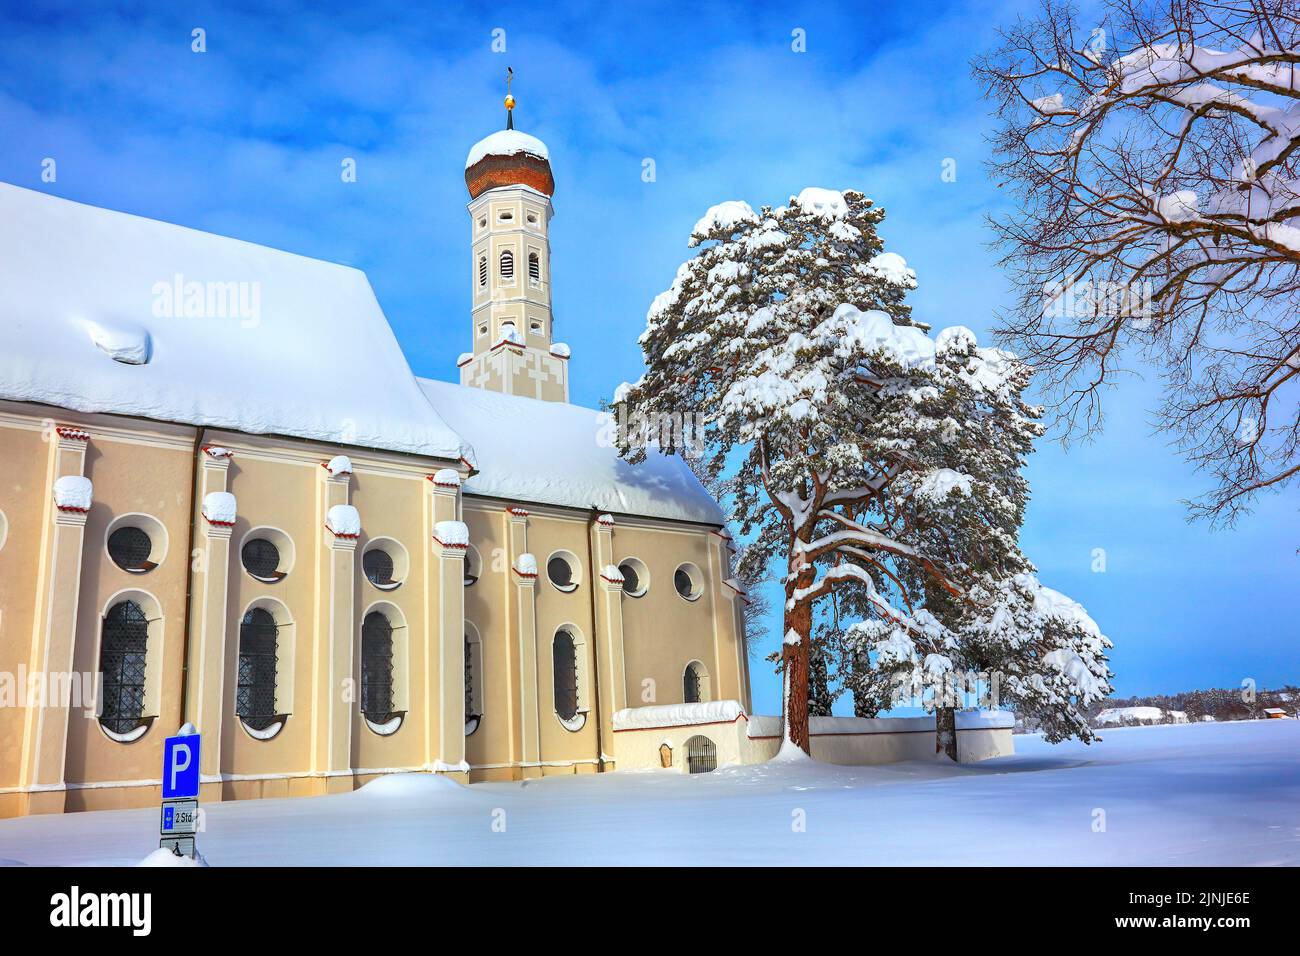 Die barocke Colomanskirche, St. Coloman, im Winter in tiefverschneiter Landschaft, nahe Schwangau, Östallgäu, Schwaben, Bayern, Deutschland / la ba Foto Stock